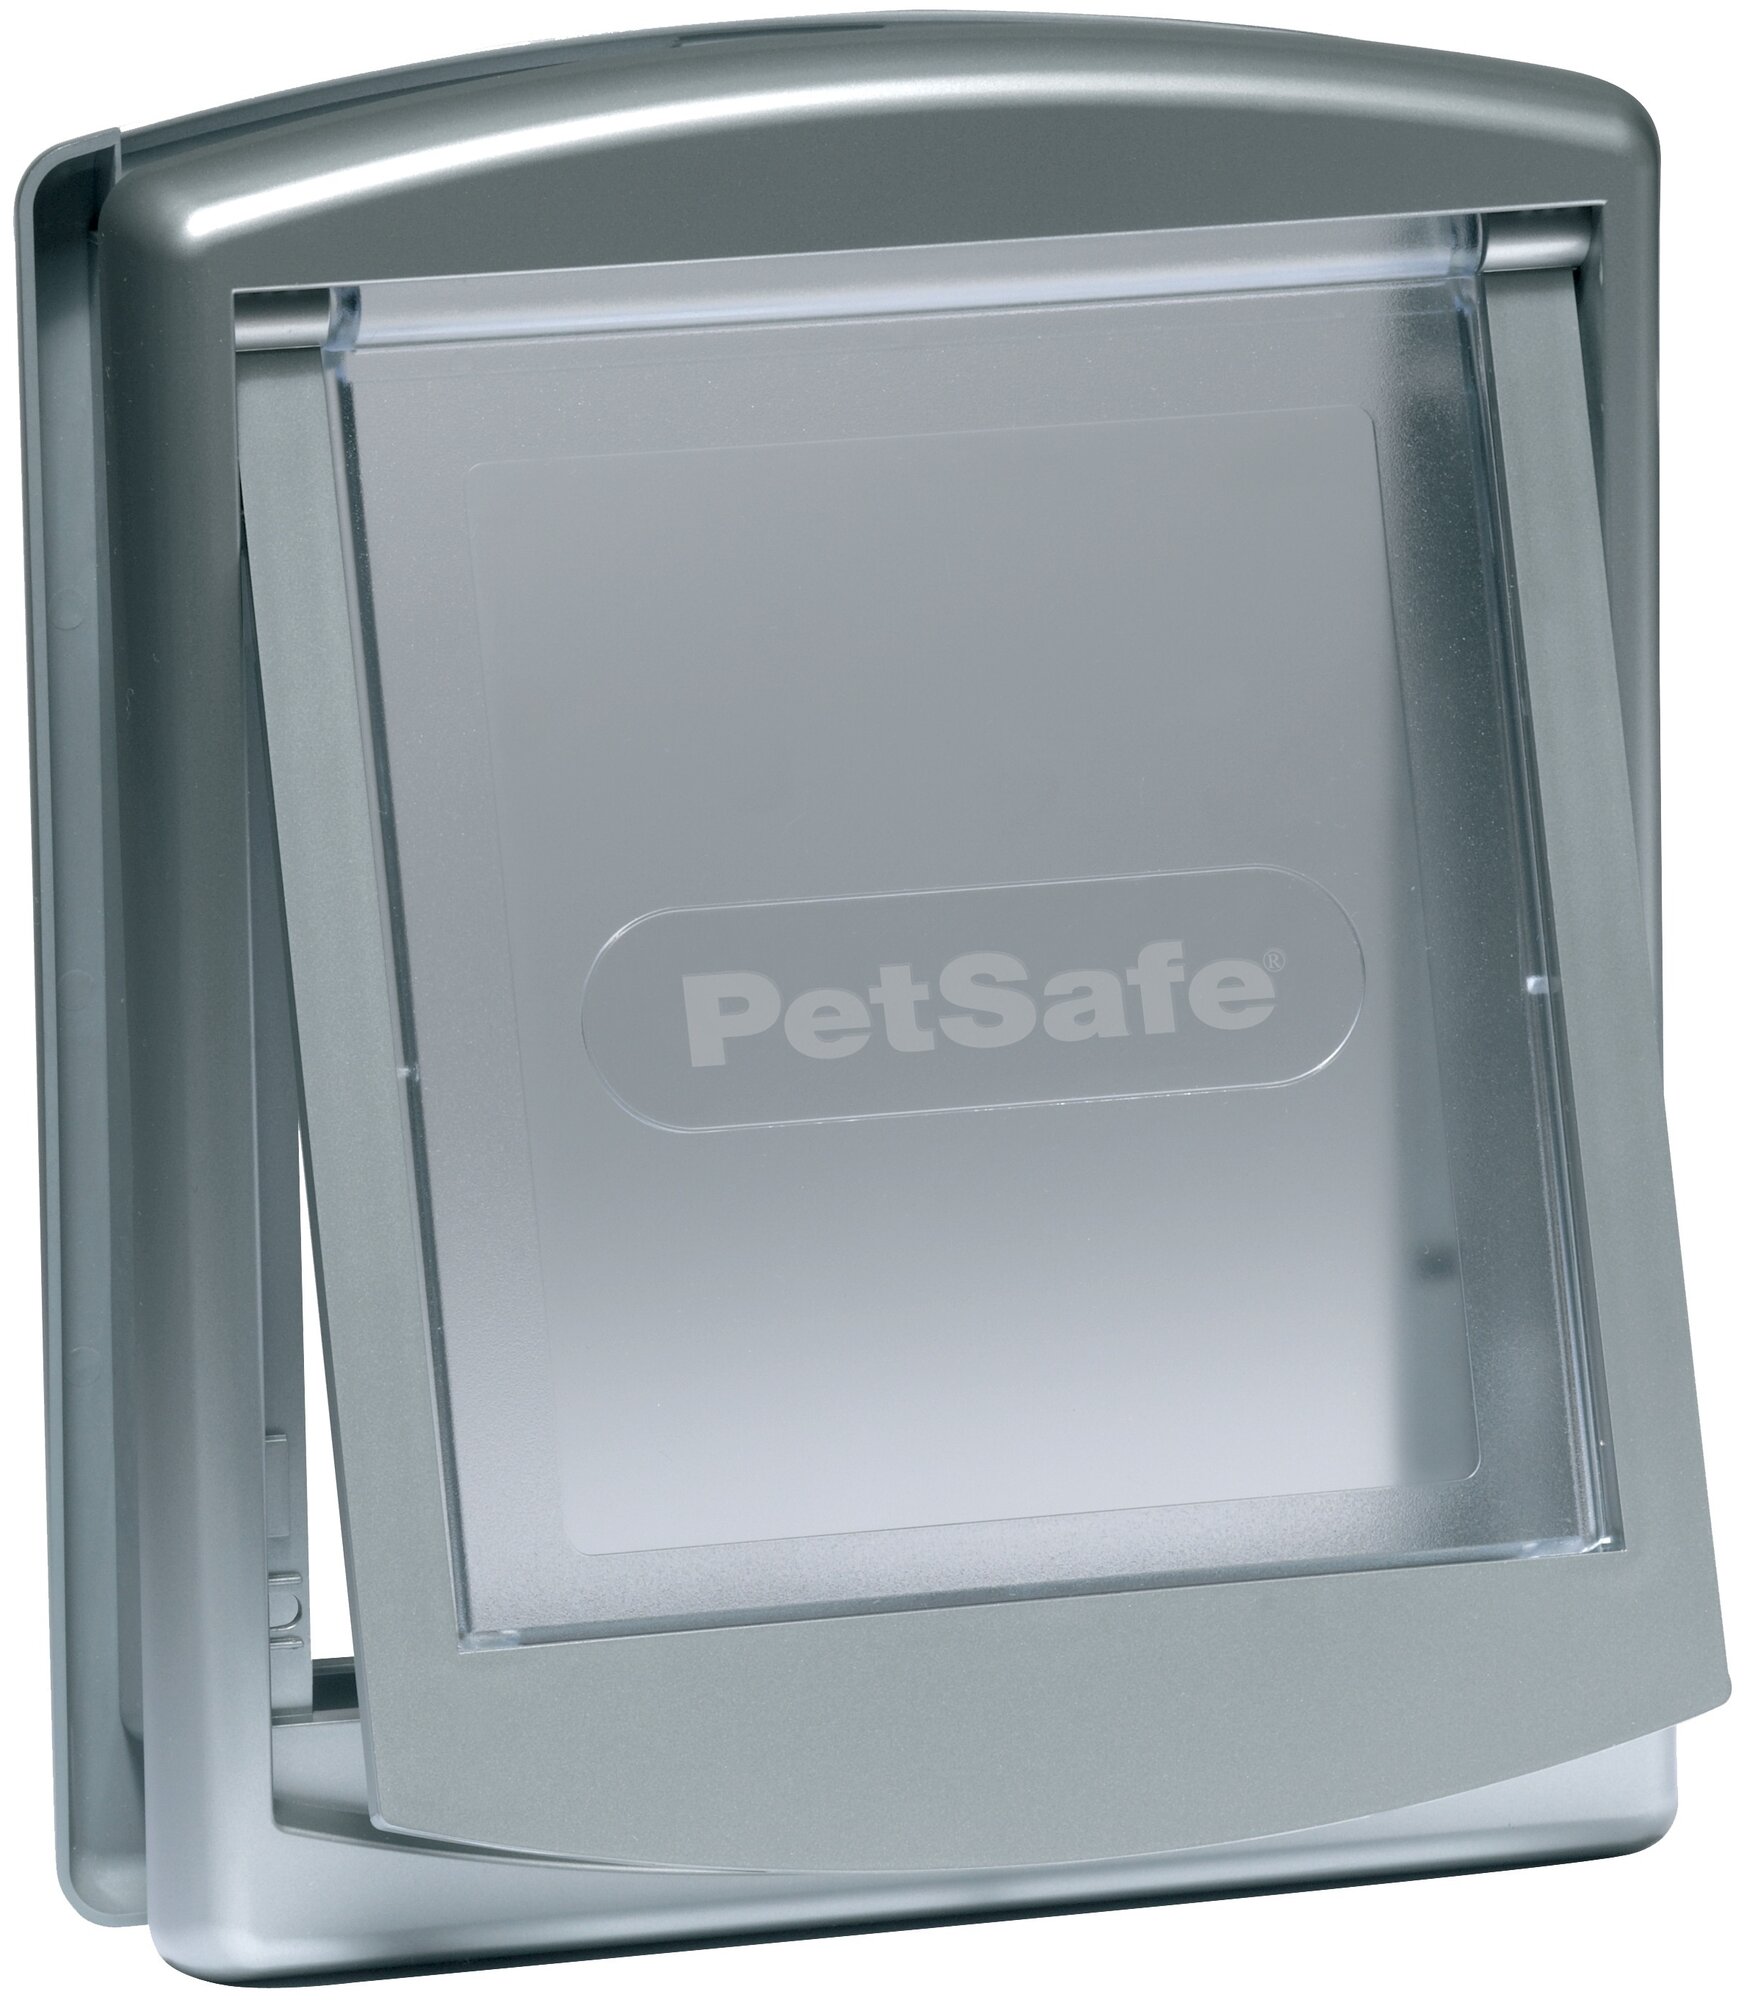 Дверца для собак и кошек PetSafe StayWell Original 2 Way серебристая малая 17,8 х 15,2 см (1 шт)